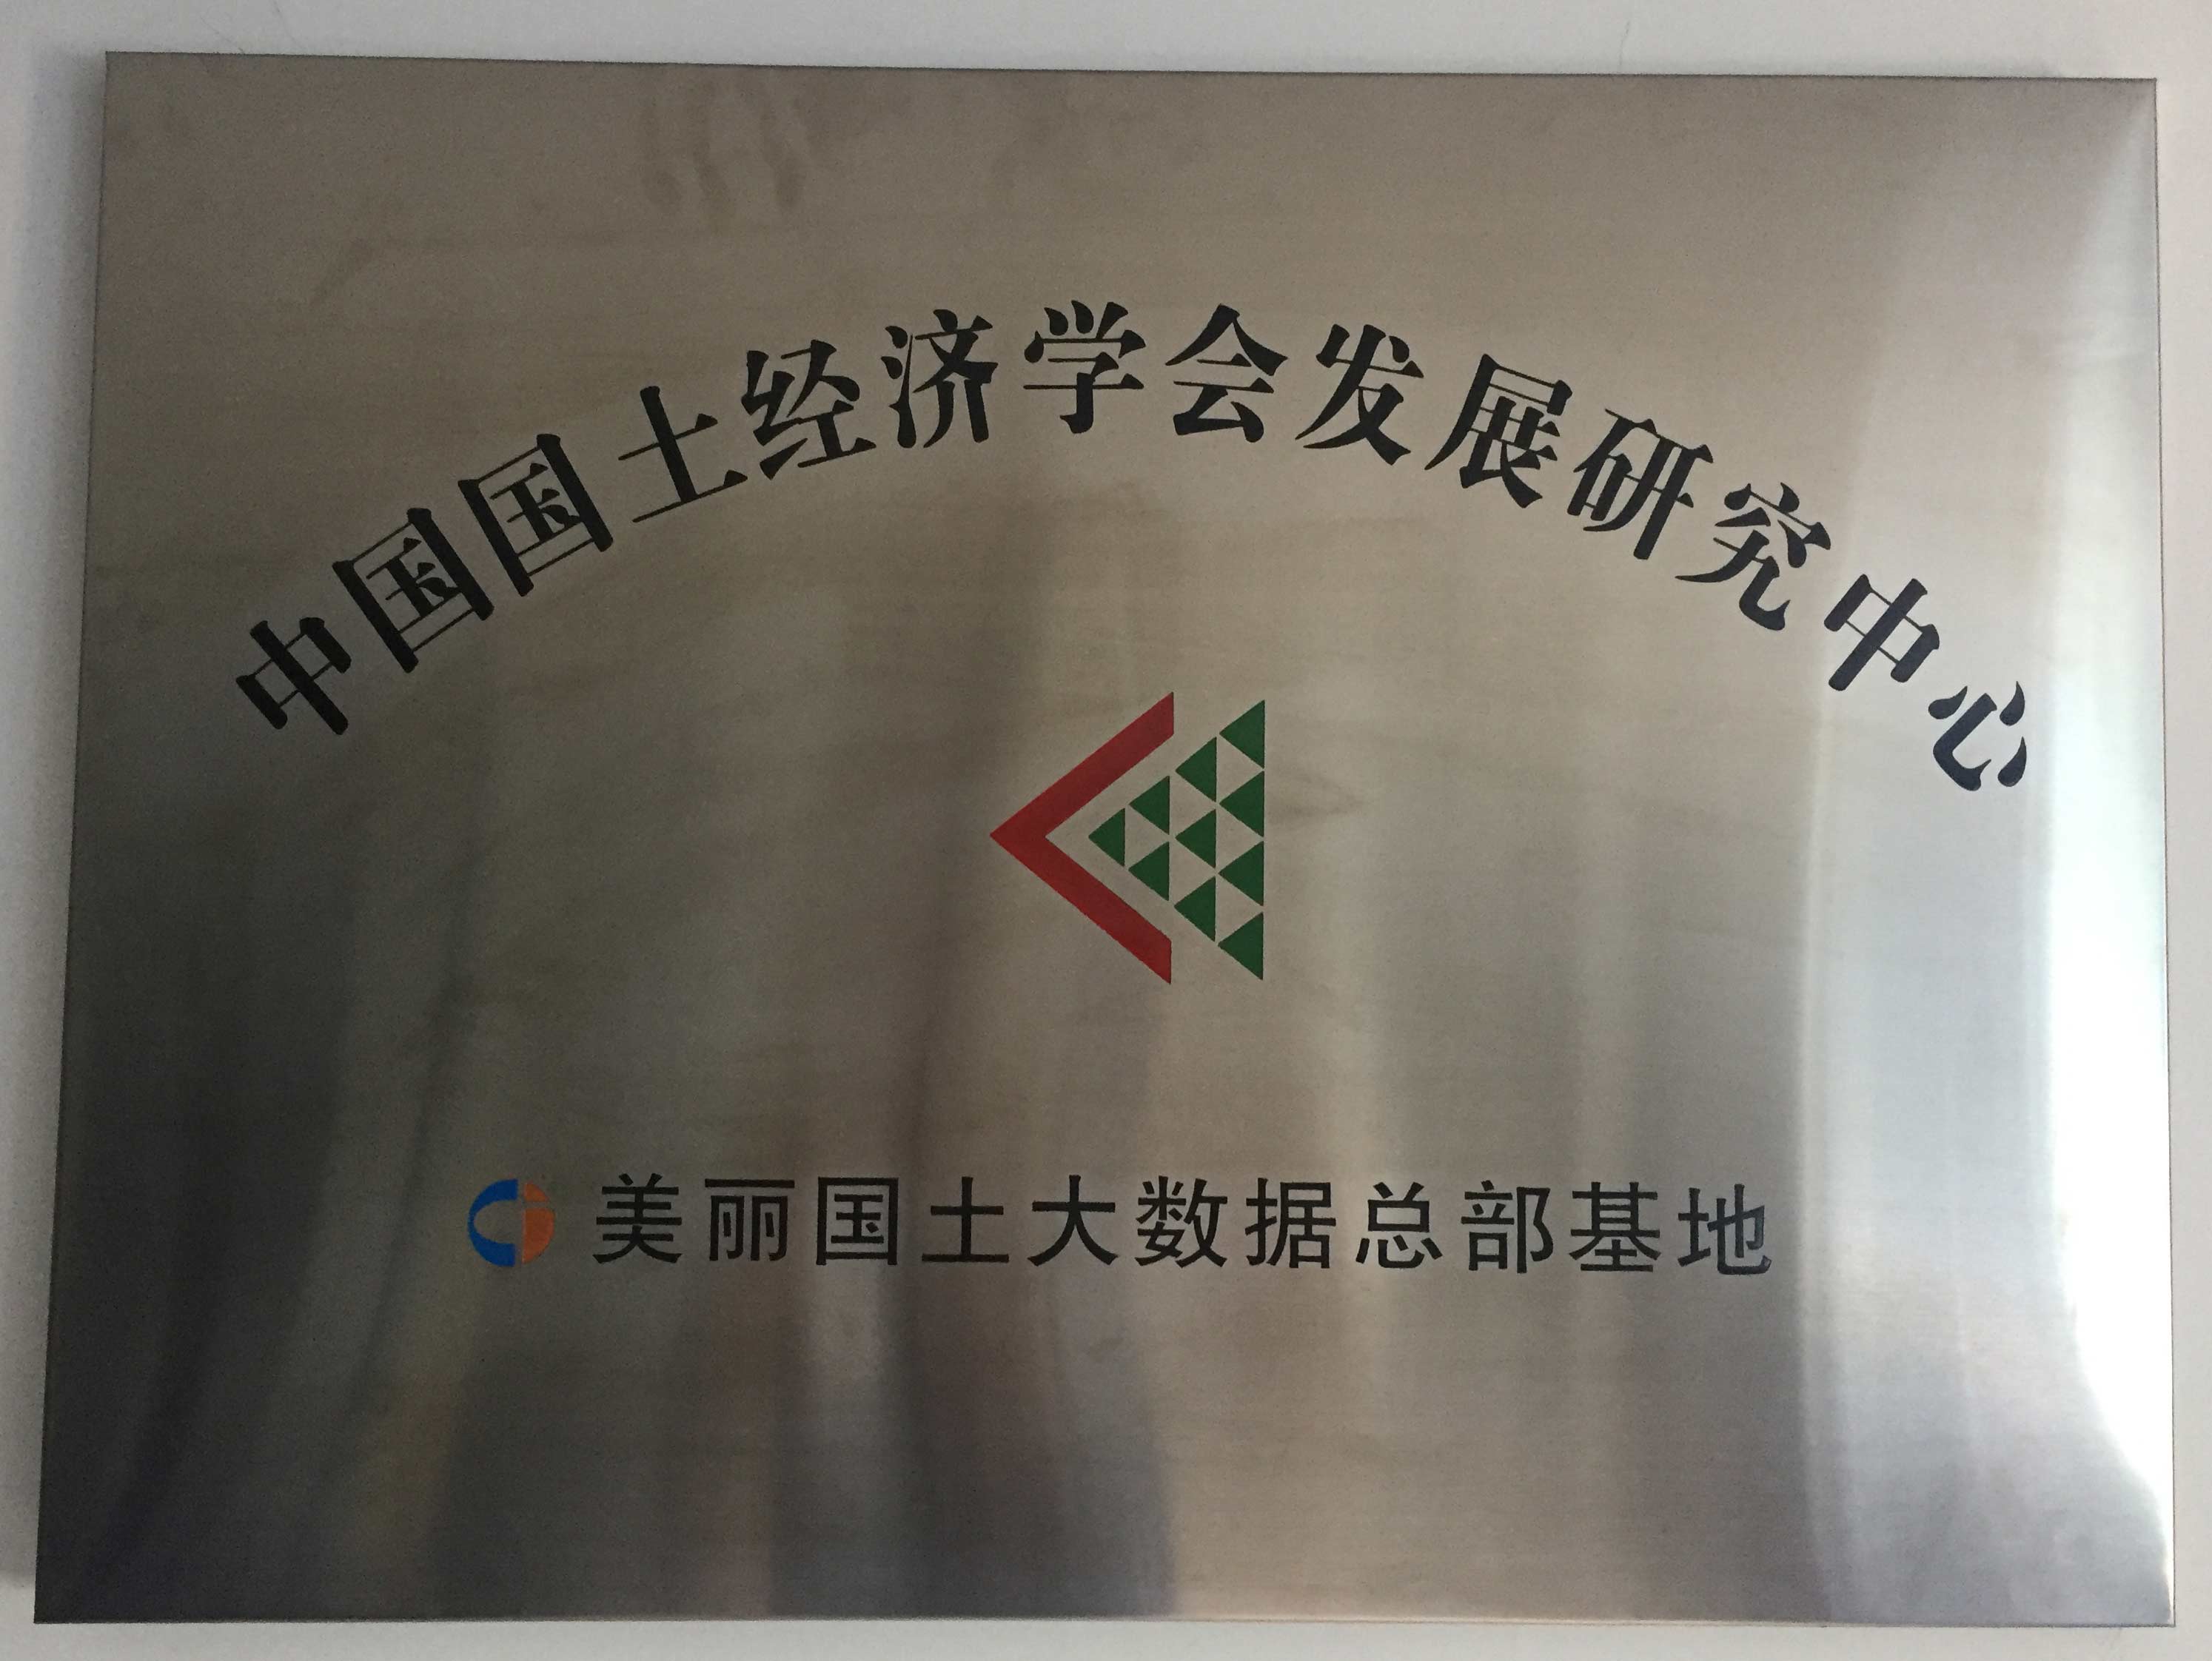 中国国土经济学会发展研究中心美丽国土大数据总部基地